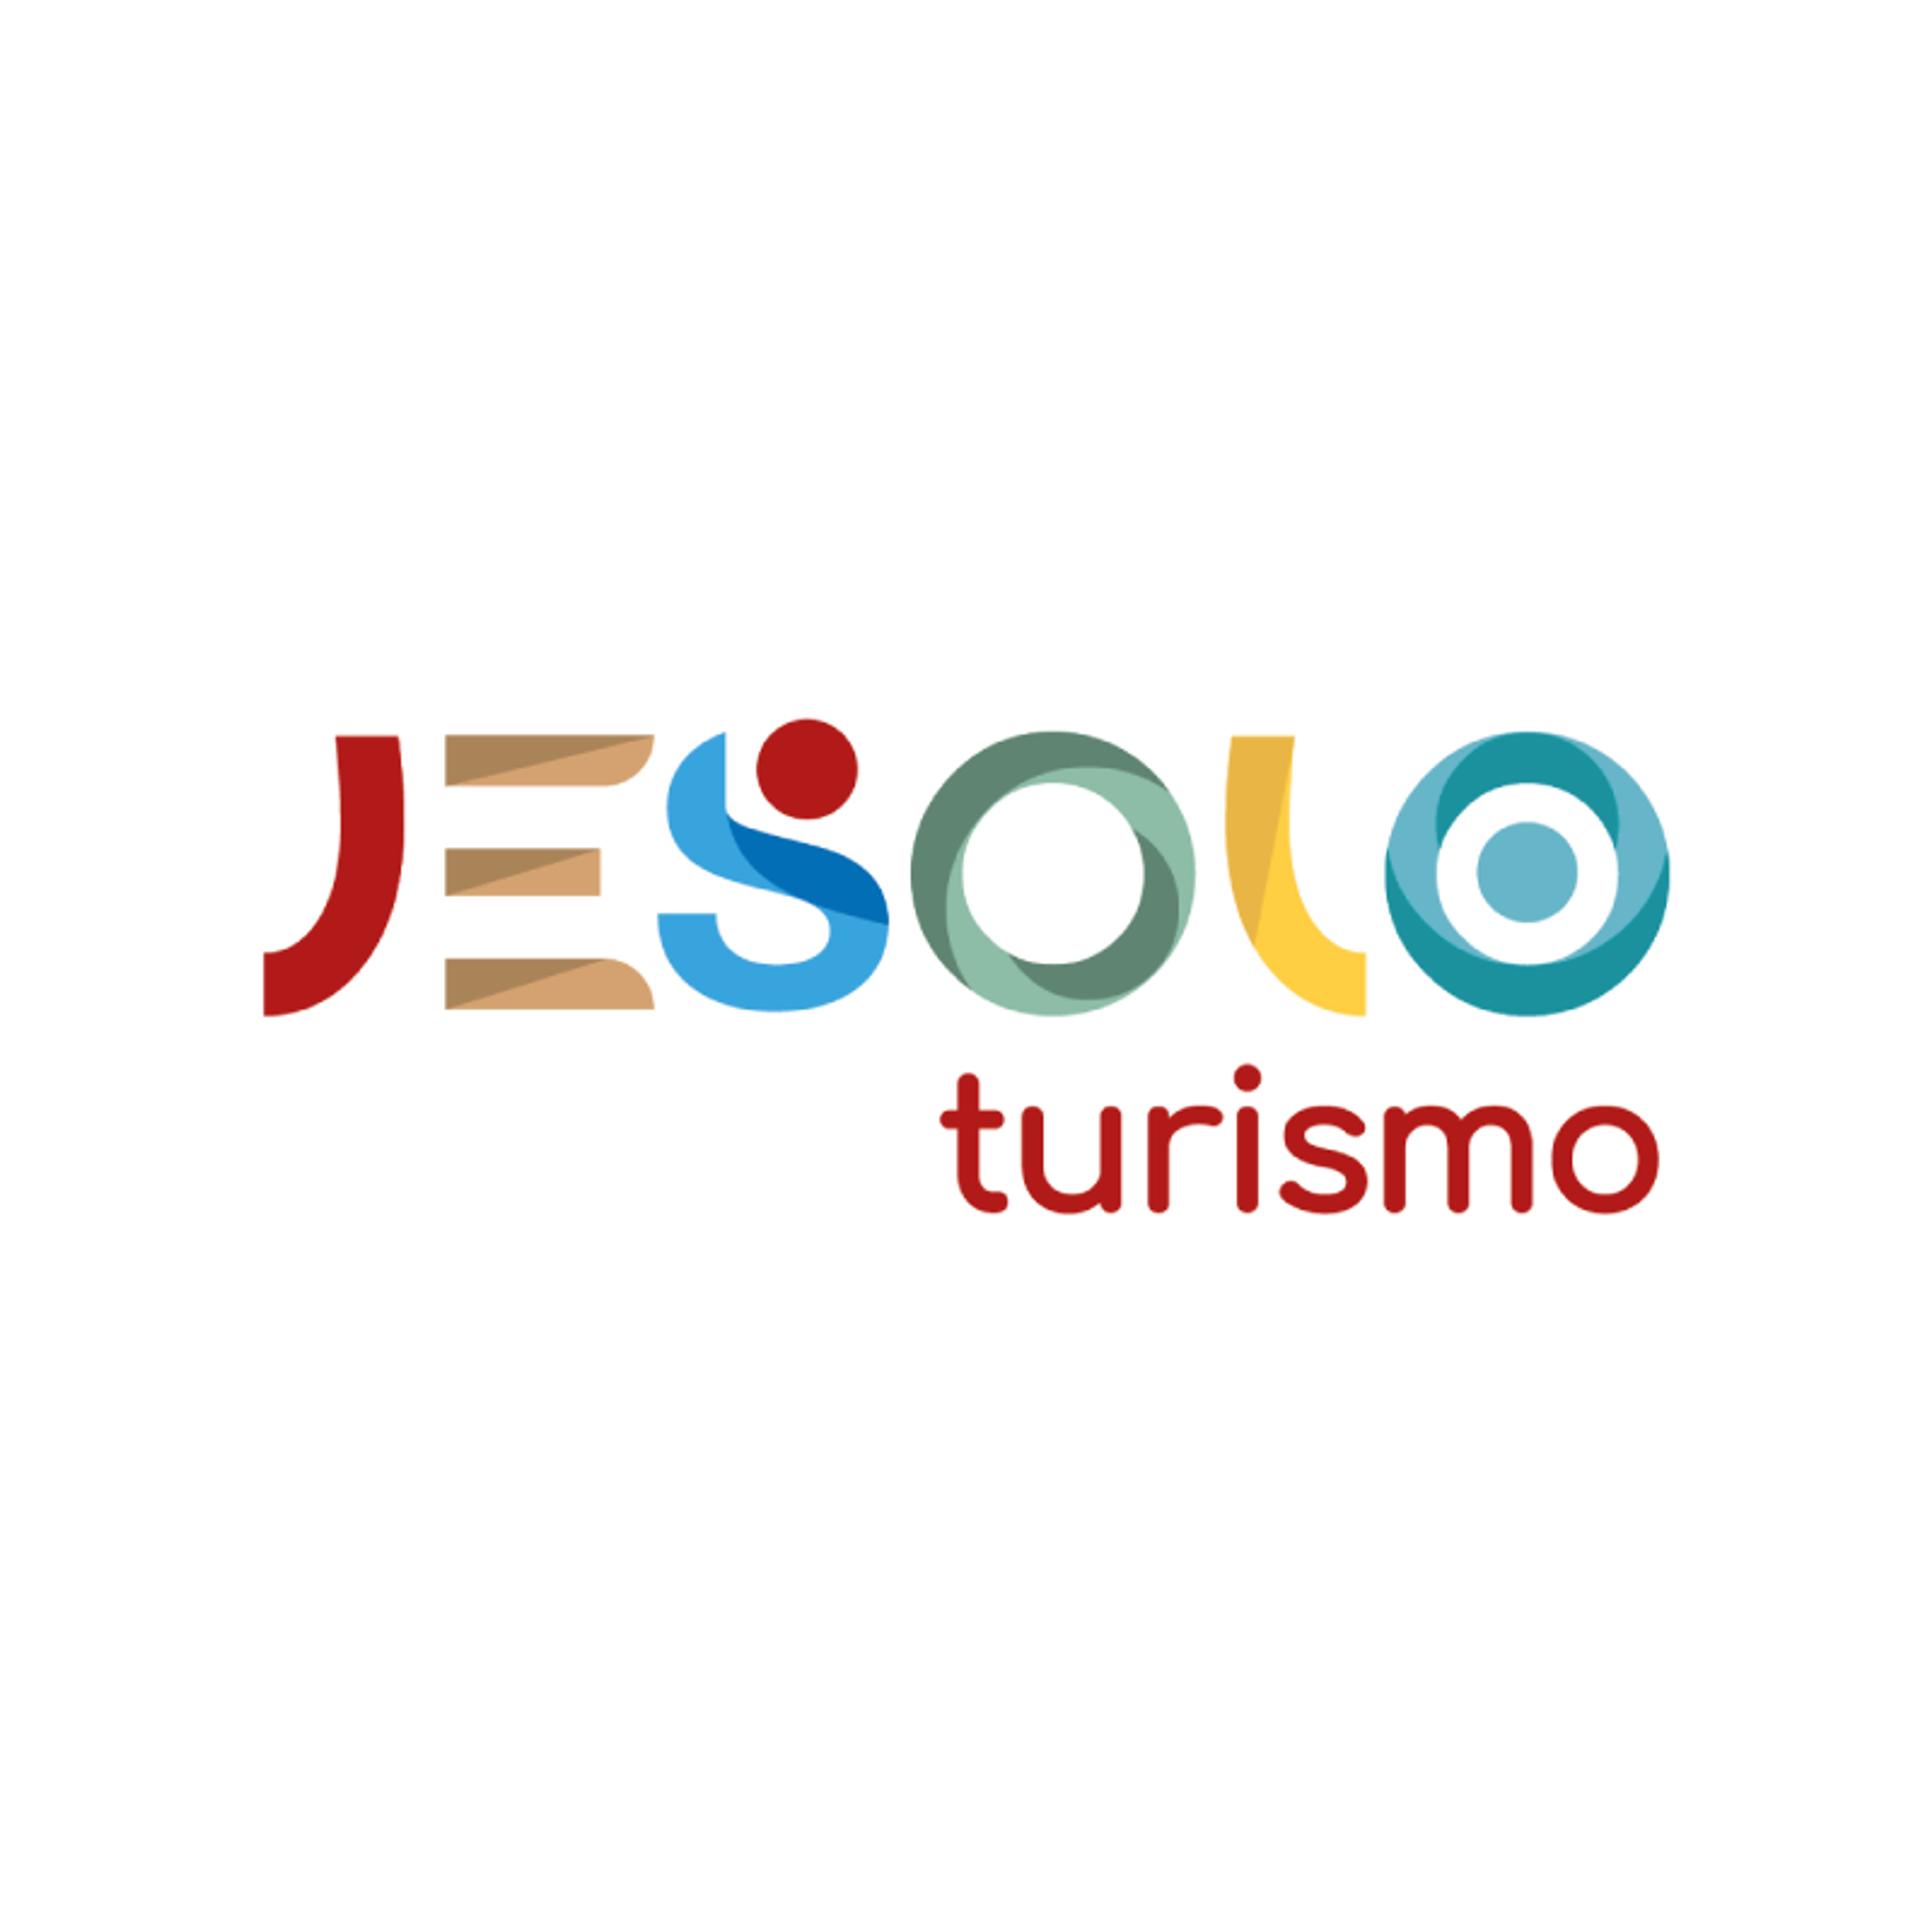 Jesolo Turismo